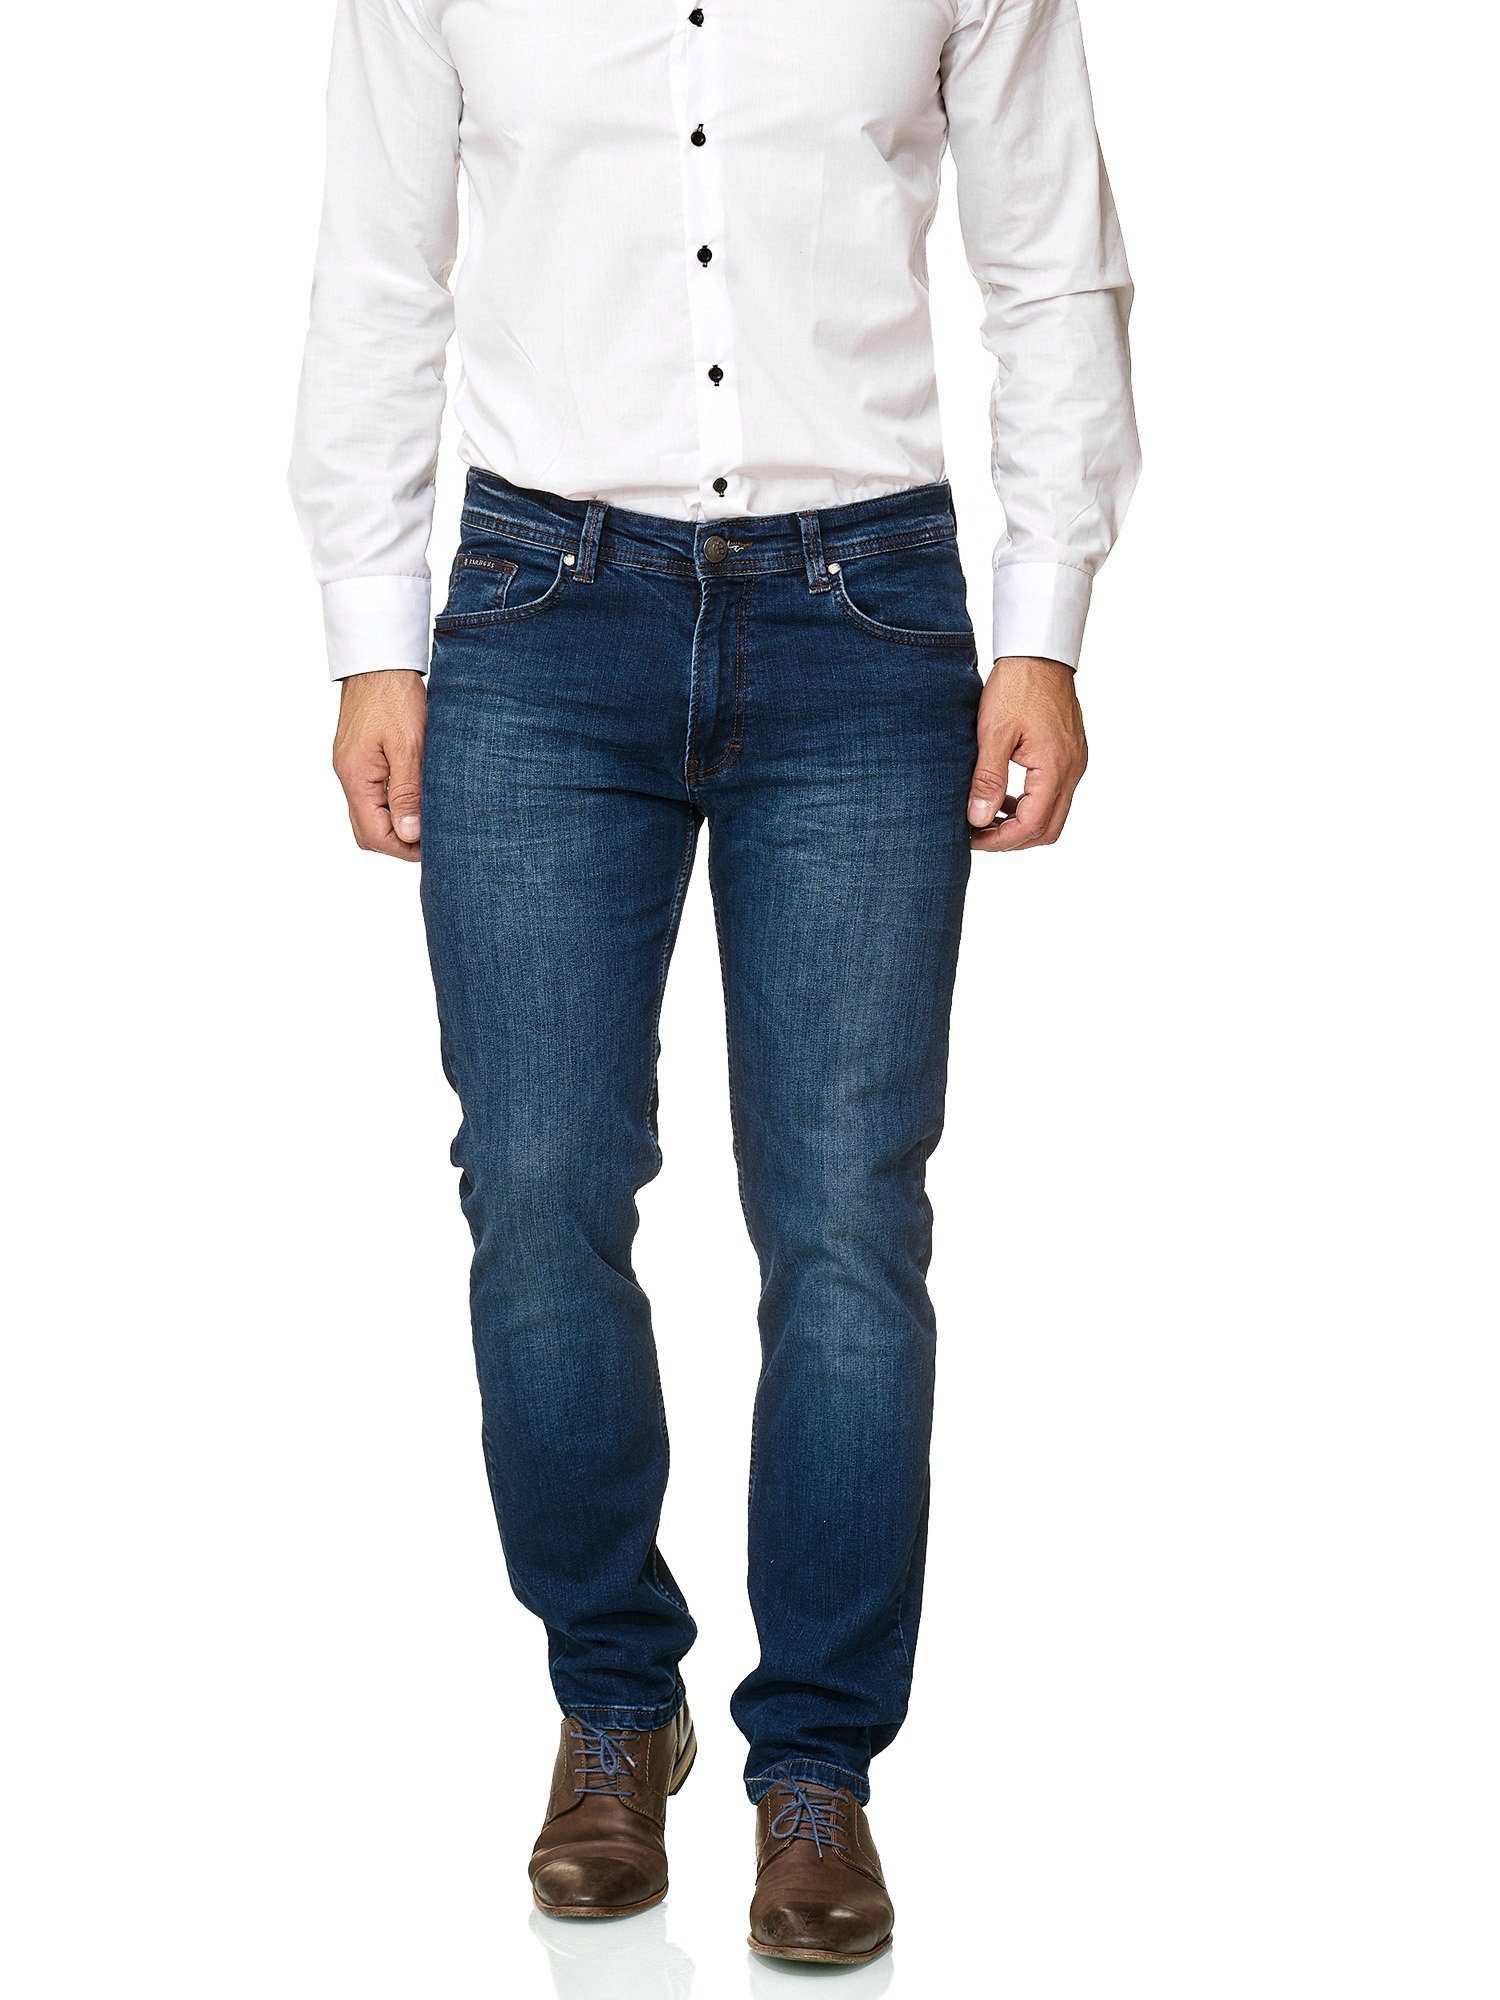 BARBONS 5-Pocket-Jeans Herren 02-Blau Fit 5-Pocket Design Regular